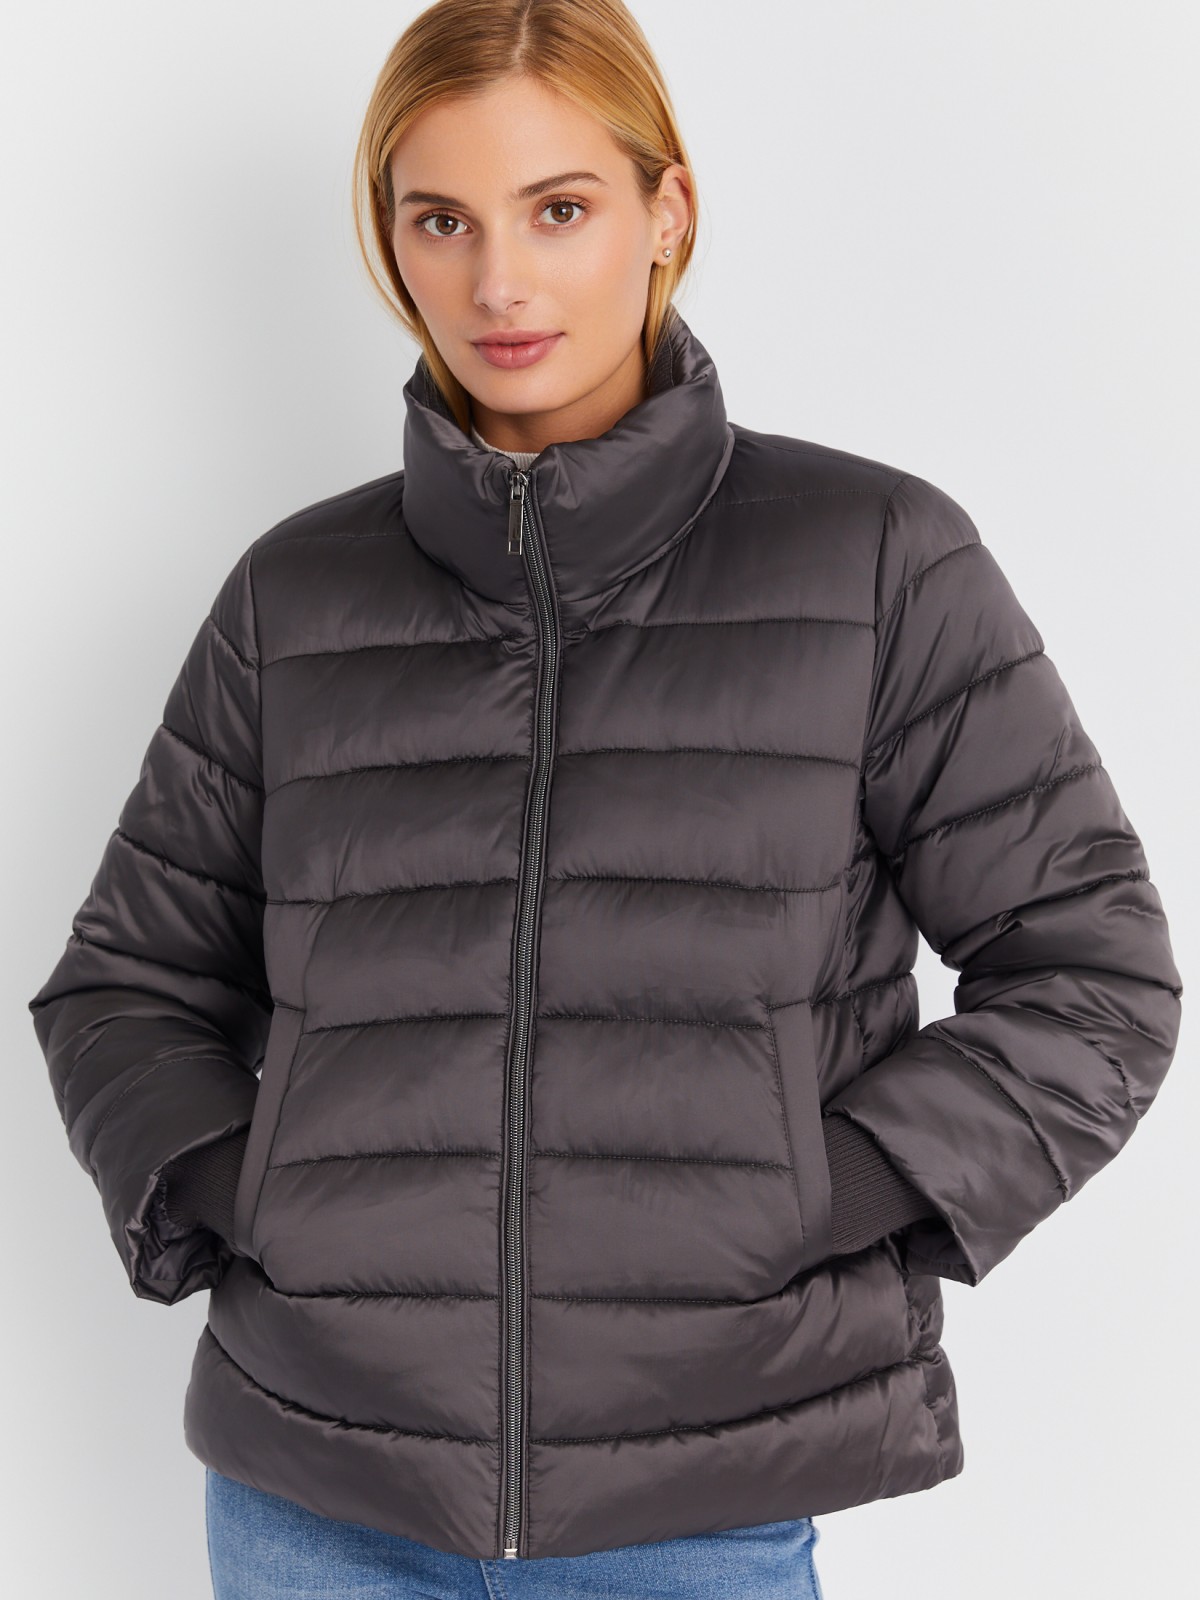 Тёплая укороченная куртка с воротником-стойкой и трикотажными манжетами zolla 023345102254, цвет темно-серый, размер XS - фото 3